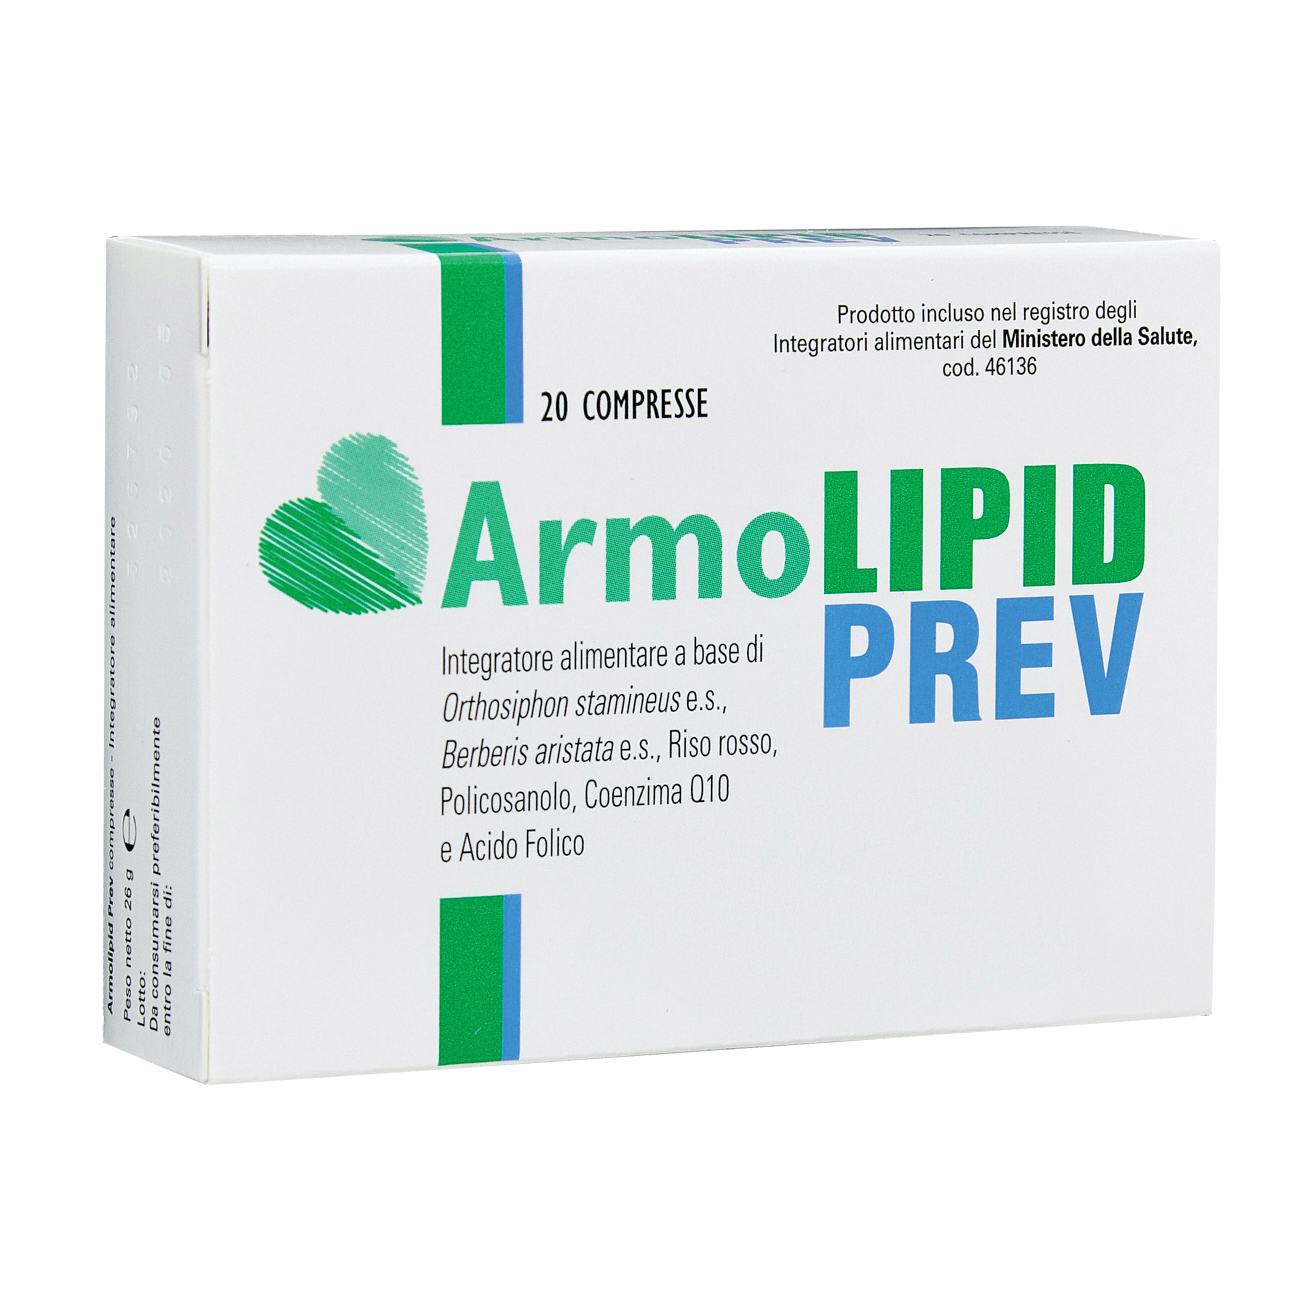 meda pharma spa armolipid prev - integratore per il controllo del colesterolo - 20 compresse, rosso